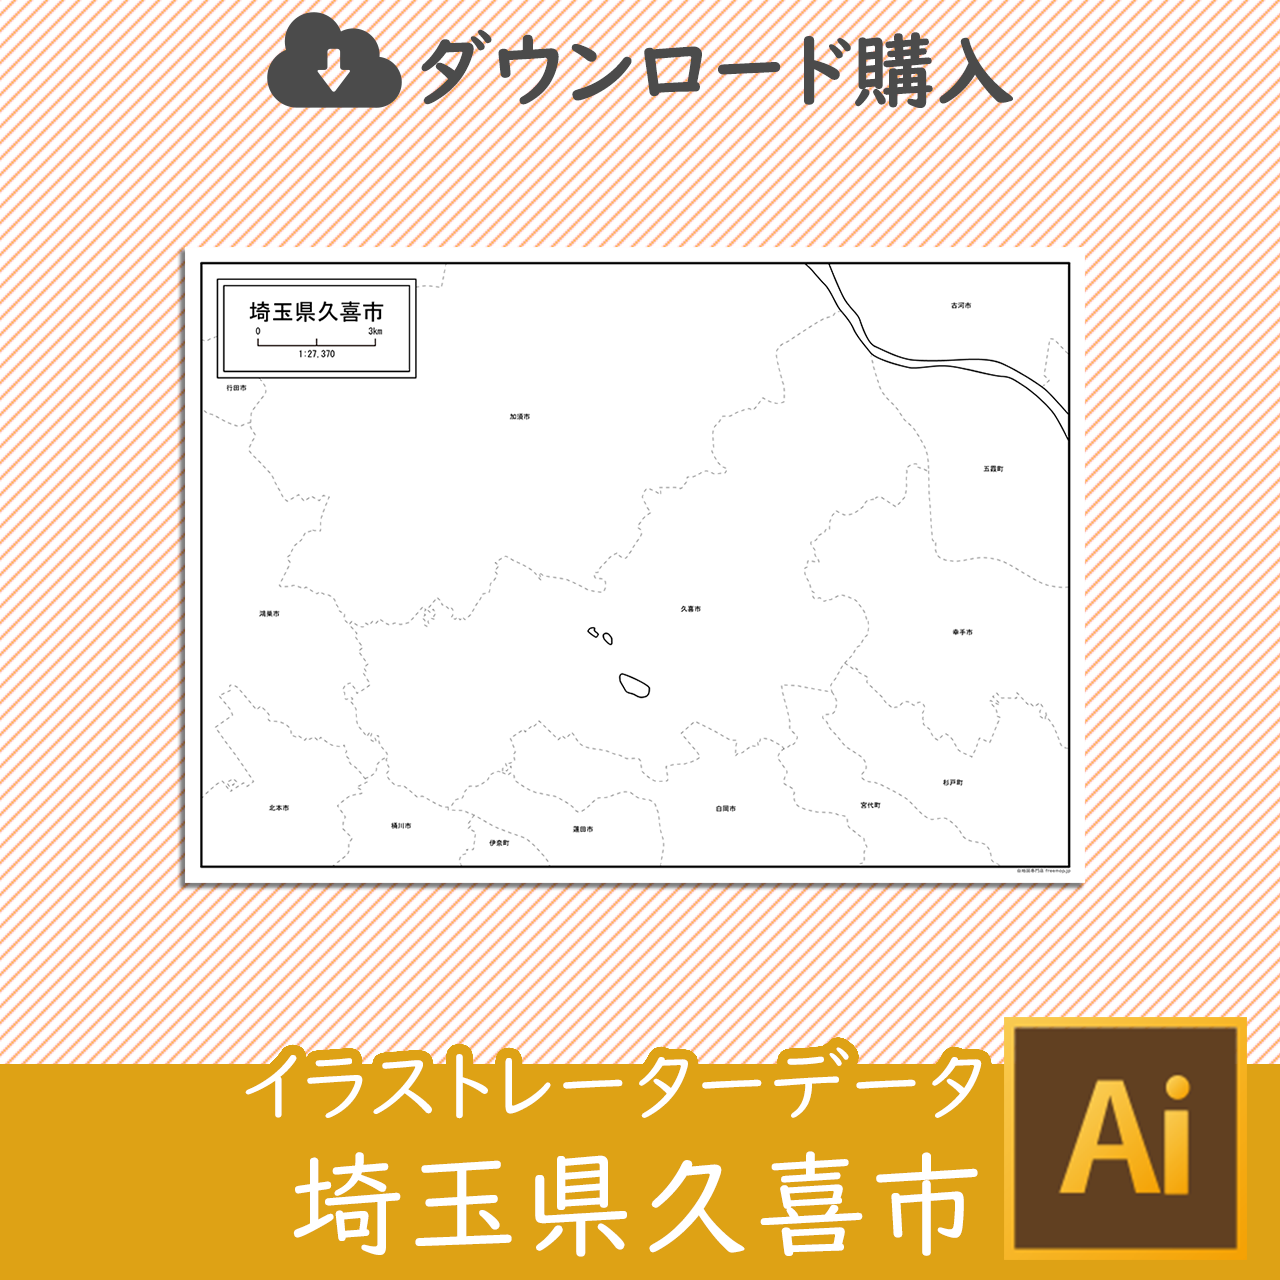 久喜市のaiデータのサムネイル画像